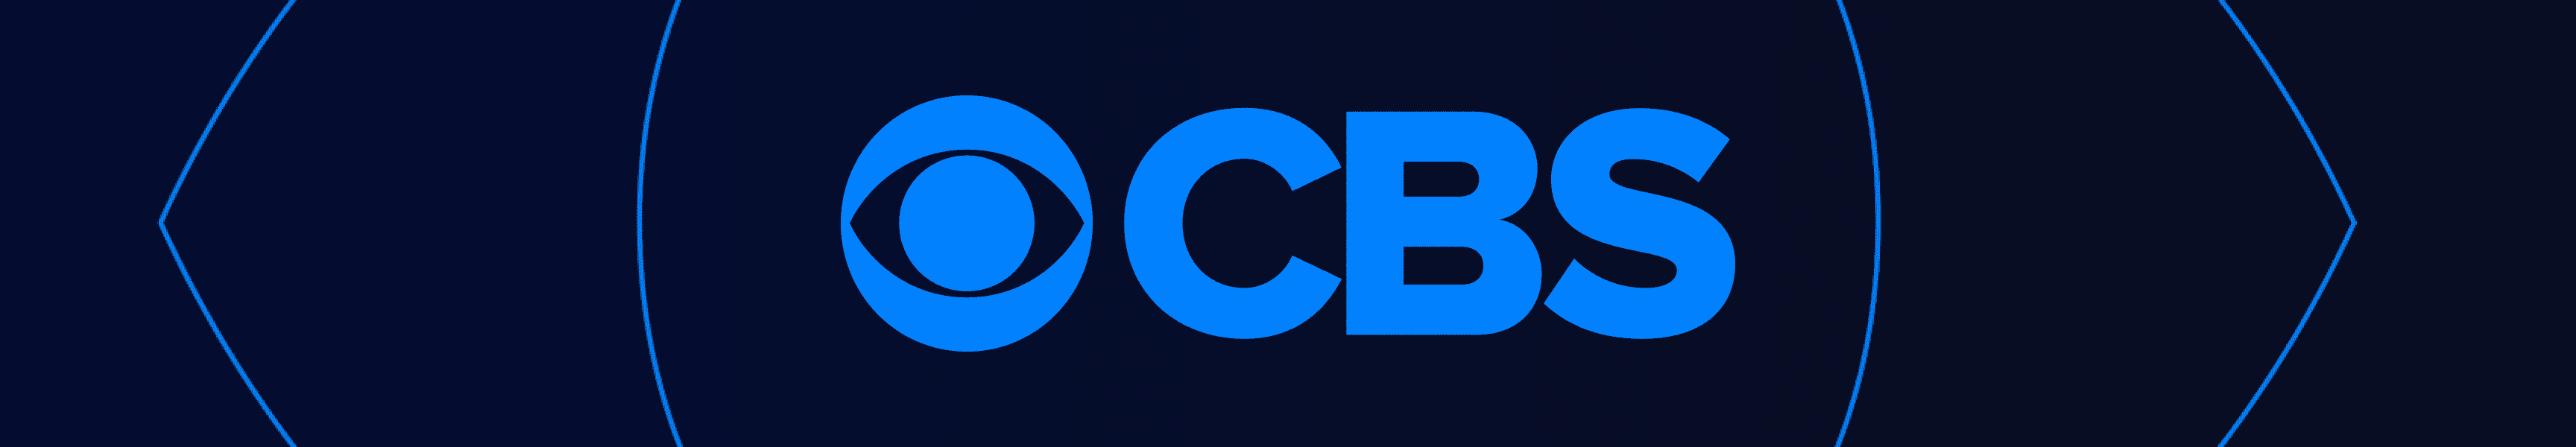 CBS Entertainment Suministros de cocina